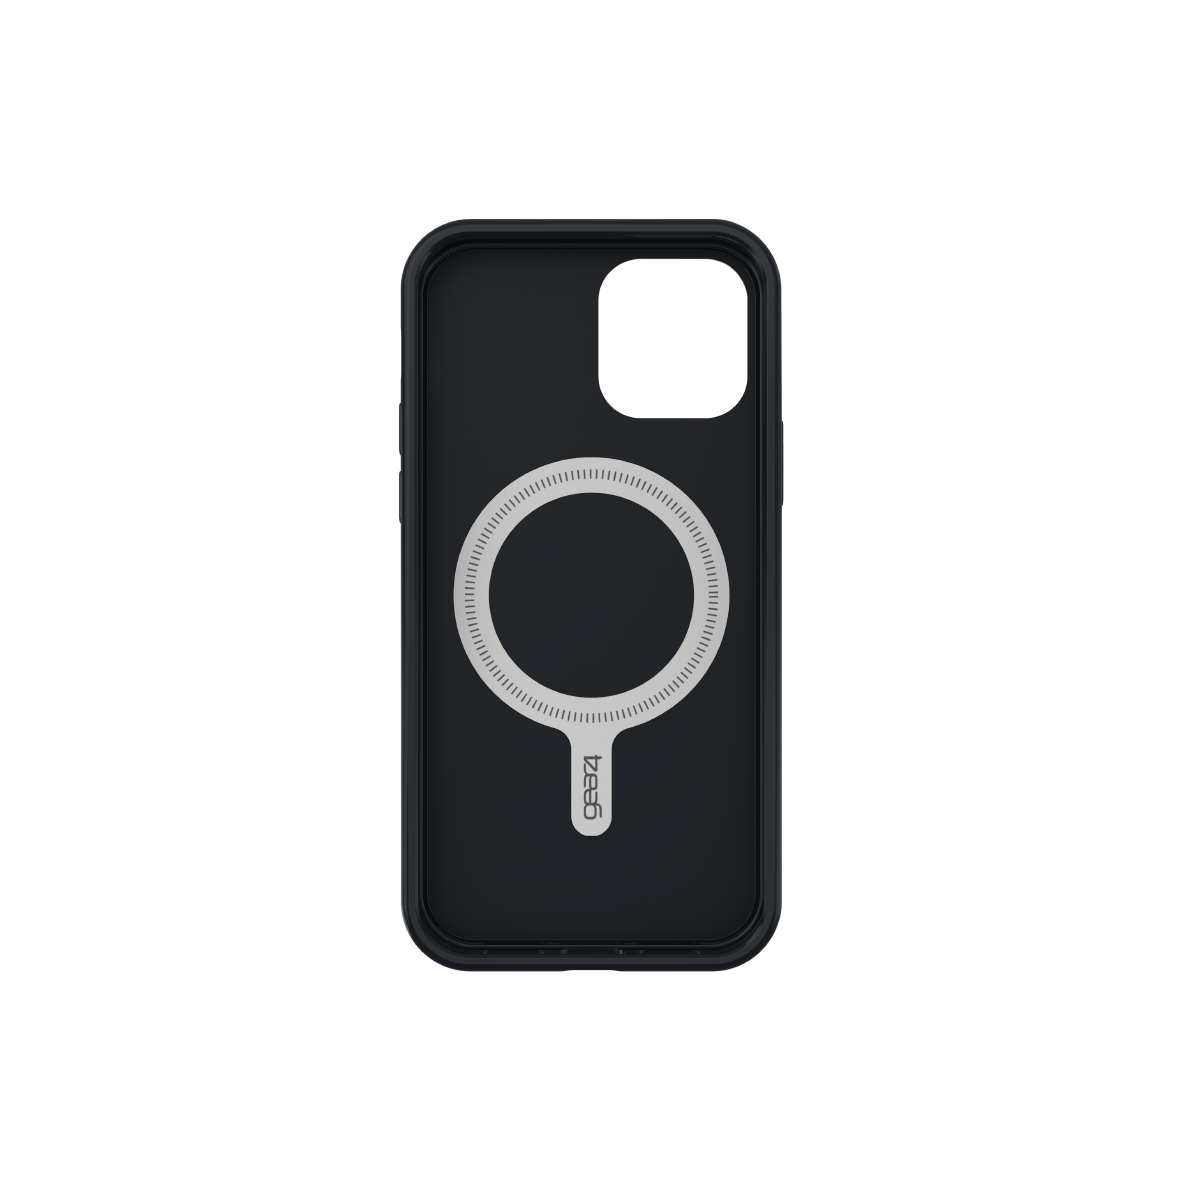 Ốp lưng chống sốc Gear4 D3O Rio Snap 4m hỗ trợ sạc Magsafe cho iPhone 12 mini/12/12 Pro/12 Pro Max - Hàng chính hãng